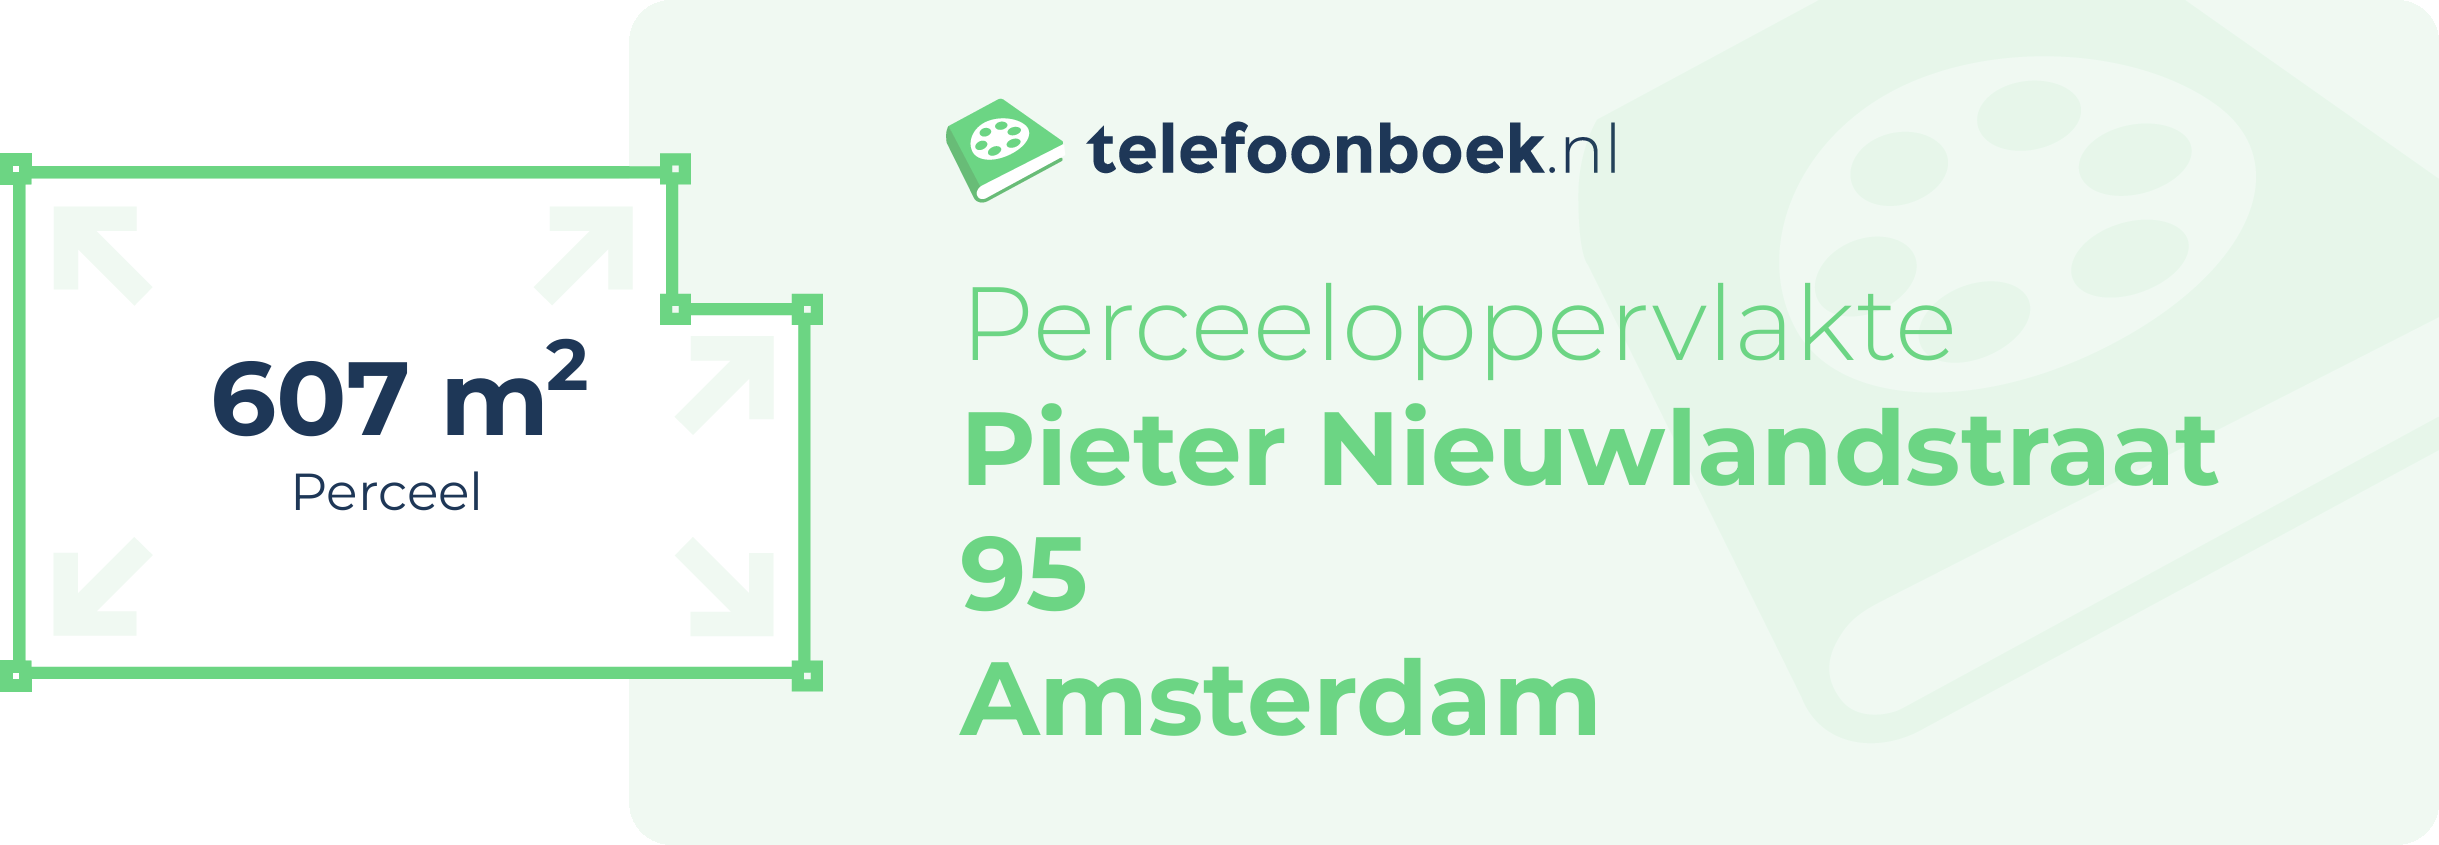 Perceeloppervlakte Pieter Nieuwlandstraat 95 Amsterdam